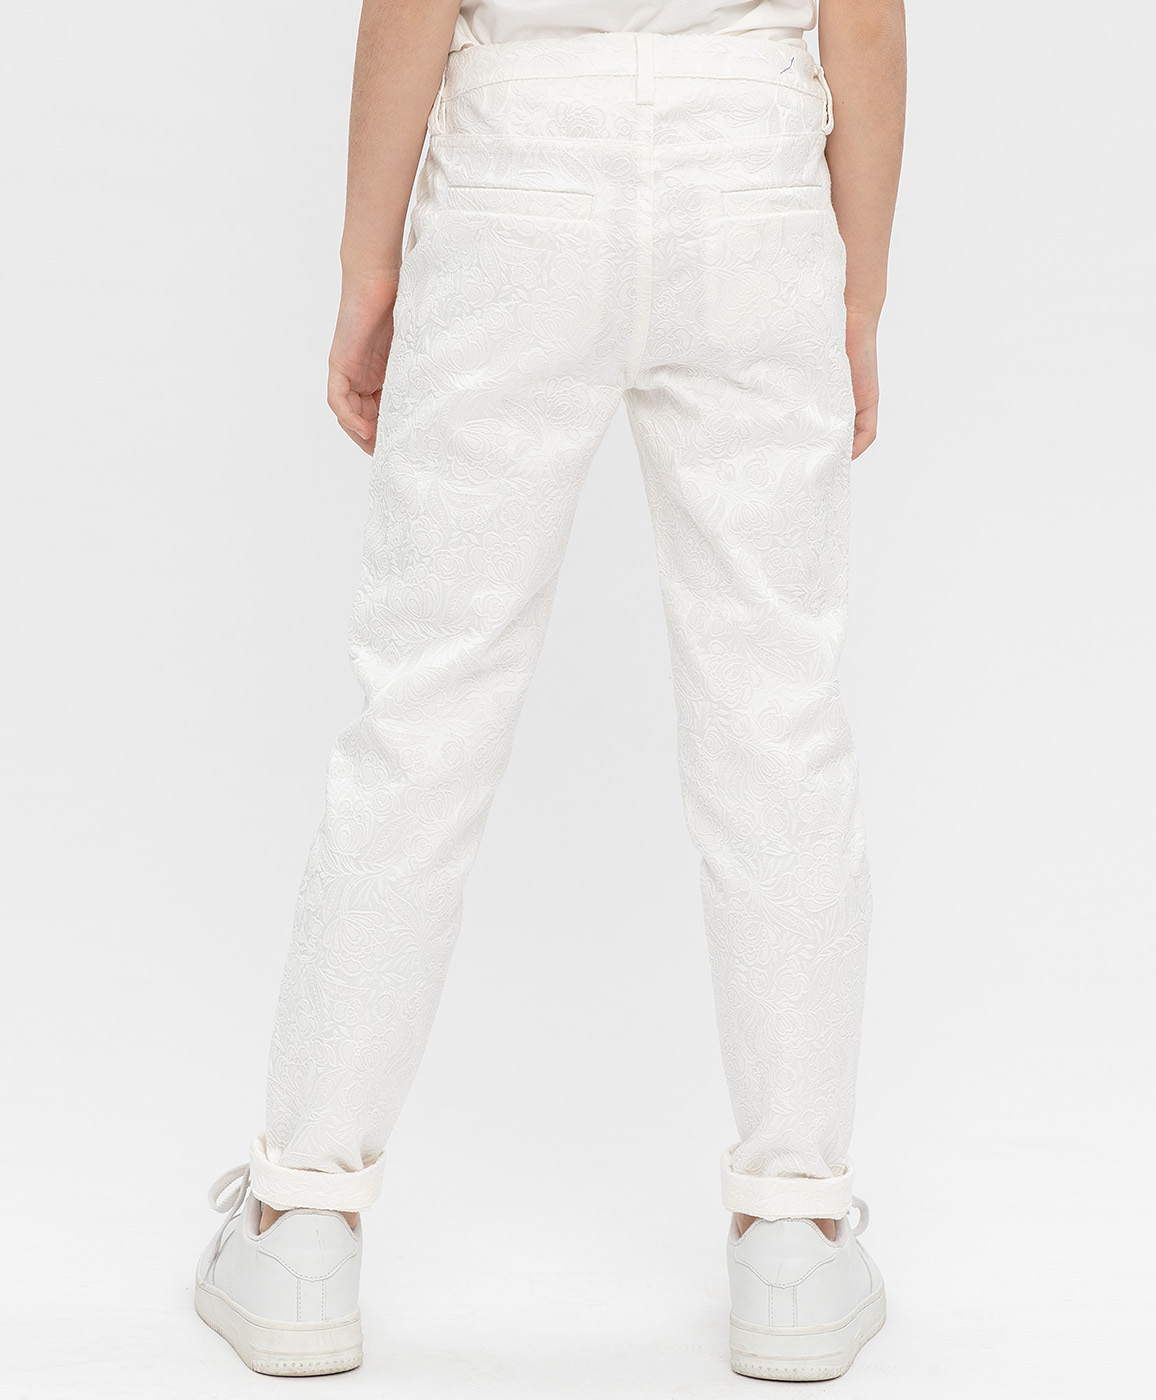 Белые жаккардовые брюки Button Blue 120BBGP63010200, размер 158, цвет белый - фото 4